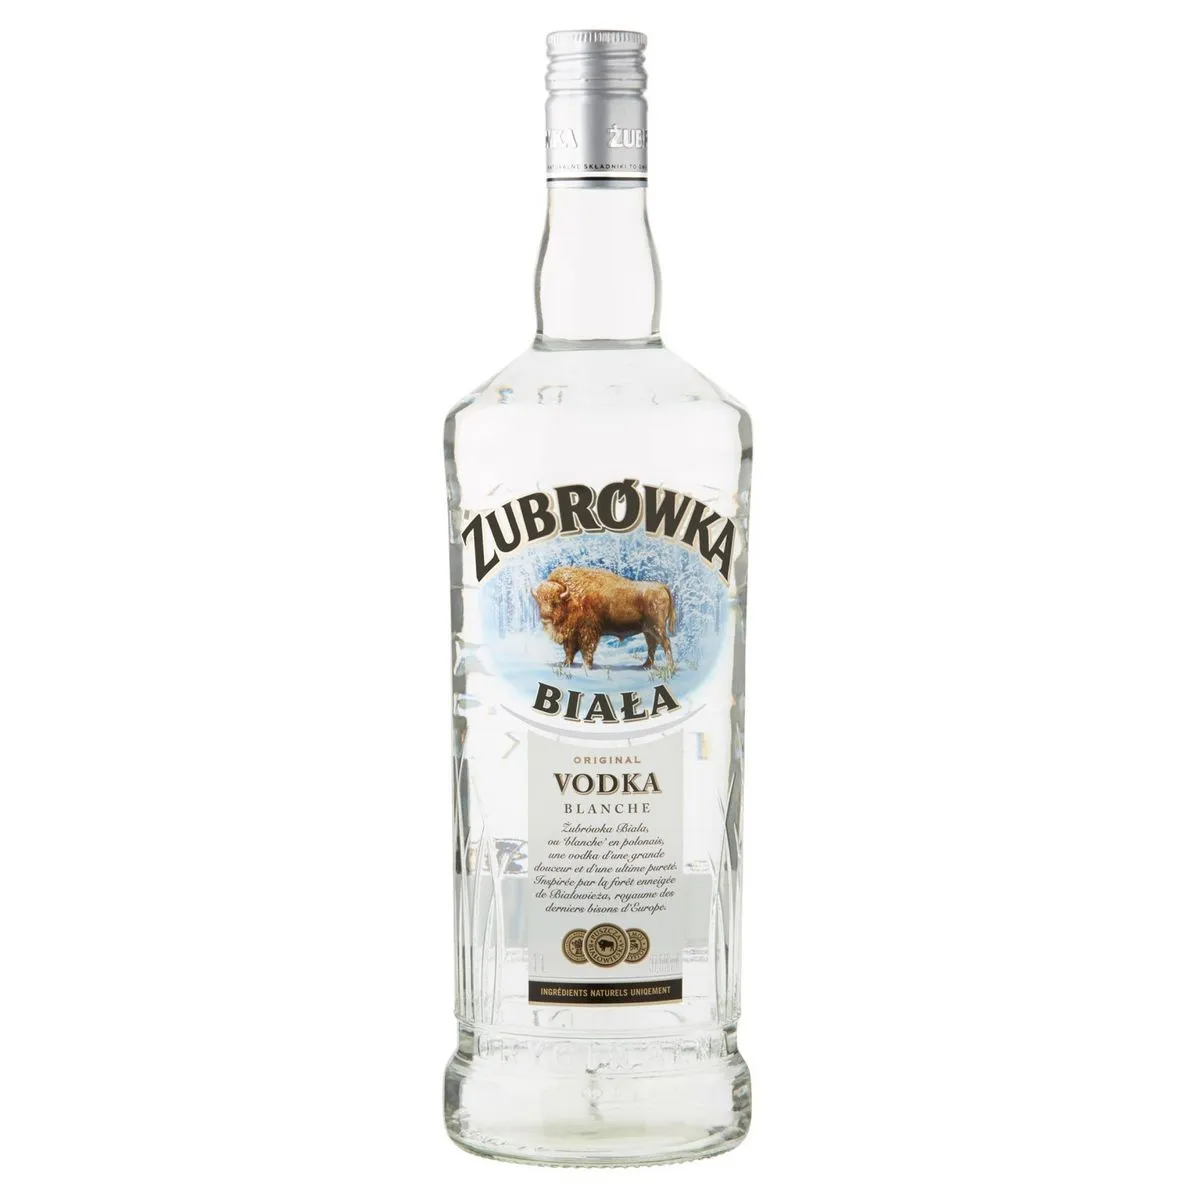 vodka zubrowka biala 37.5° 1 l